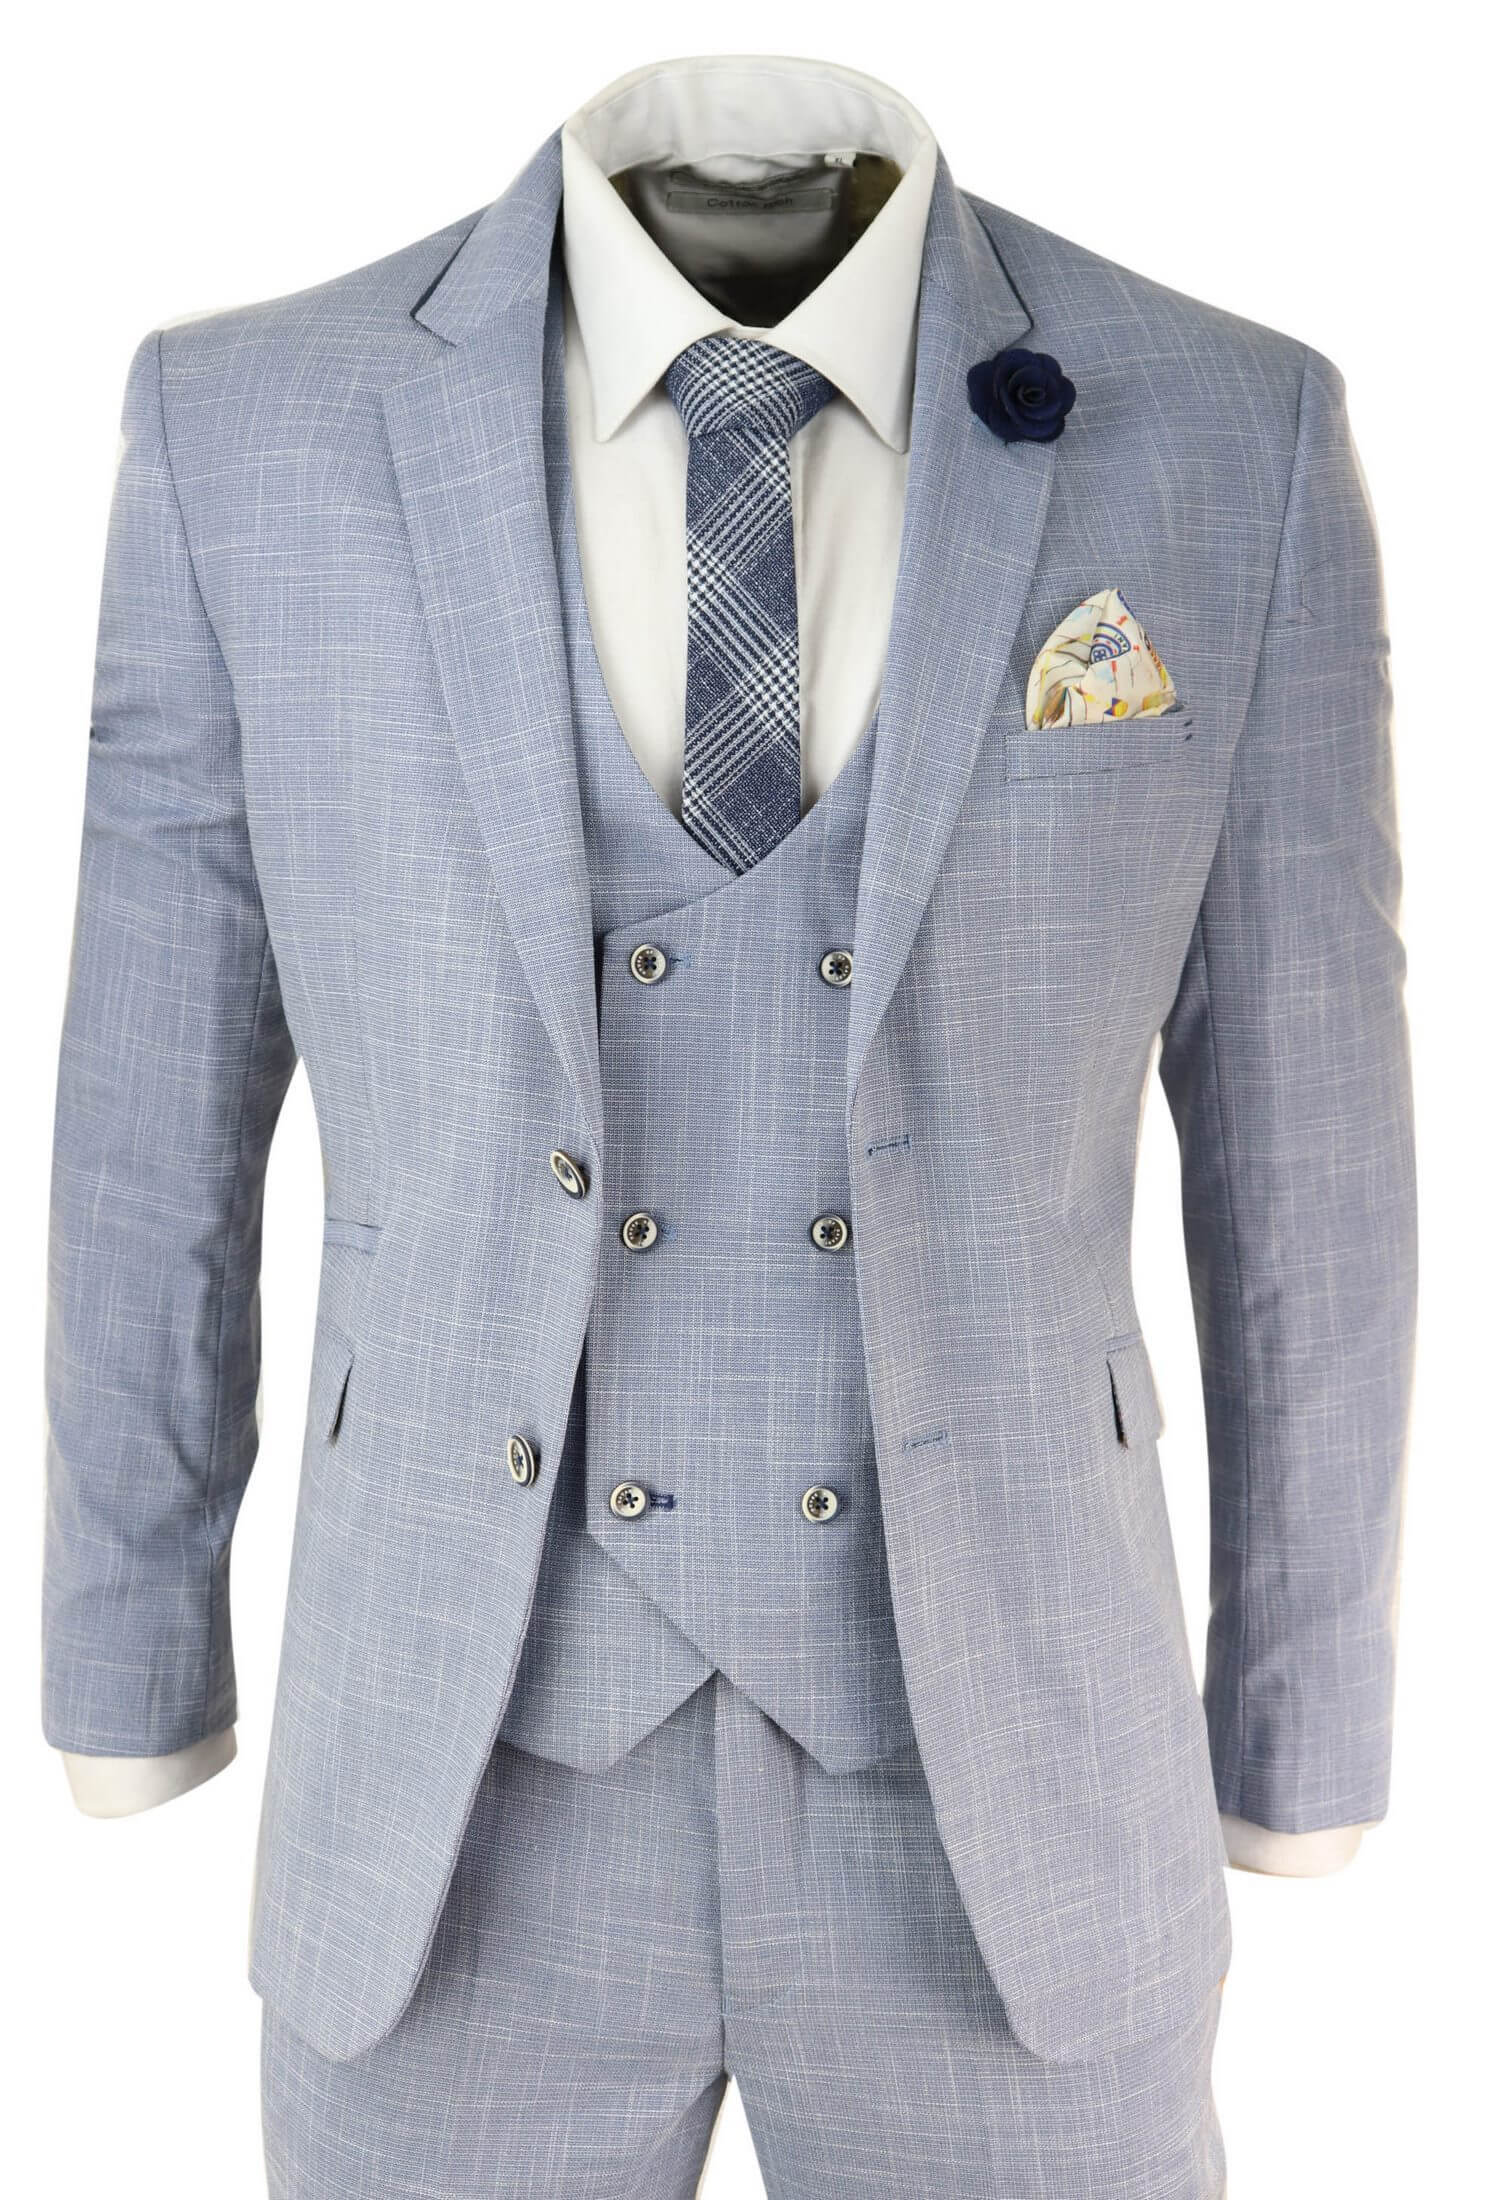 Mens Light Blue 3 Piece Suit: Buy Online - Happy Gentleman